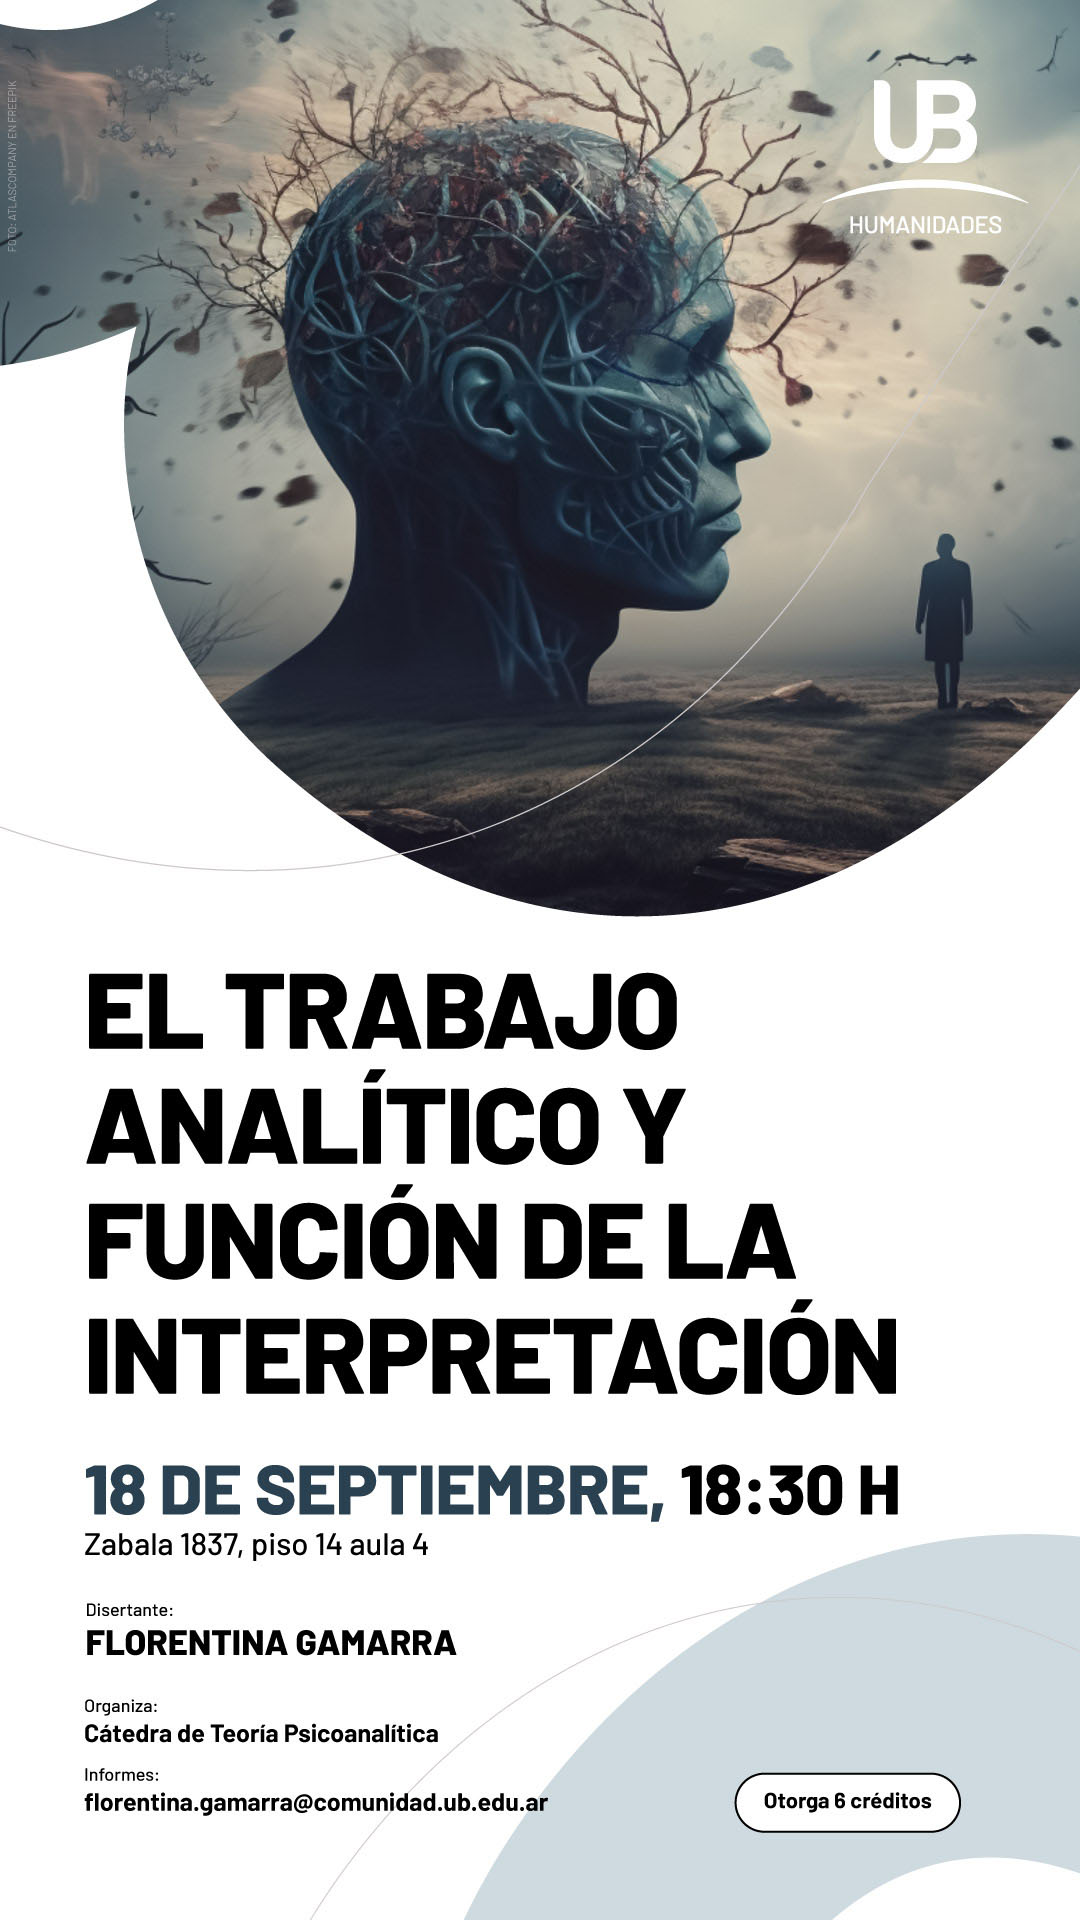 El trabajo analítico y función de la interpretación